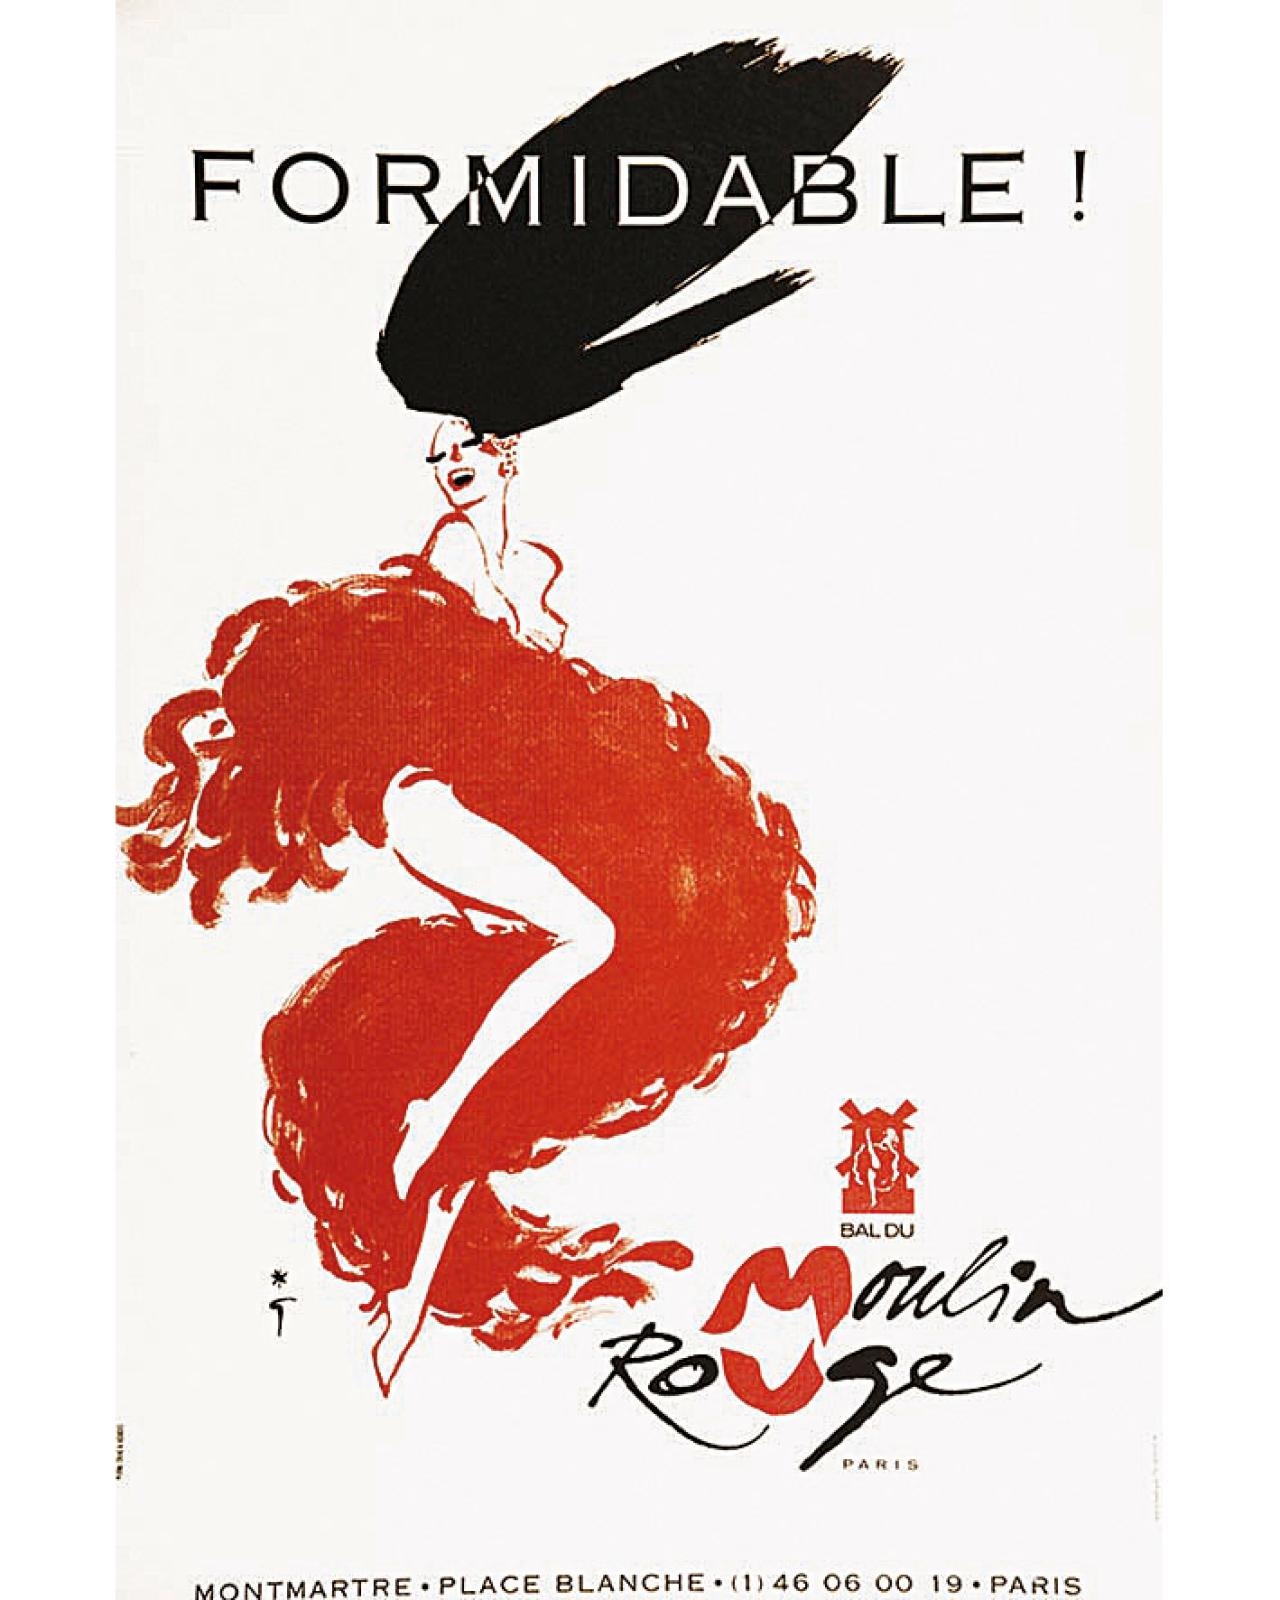 Moulin Rouge - Formidable by René Gruau, 1988